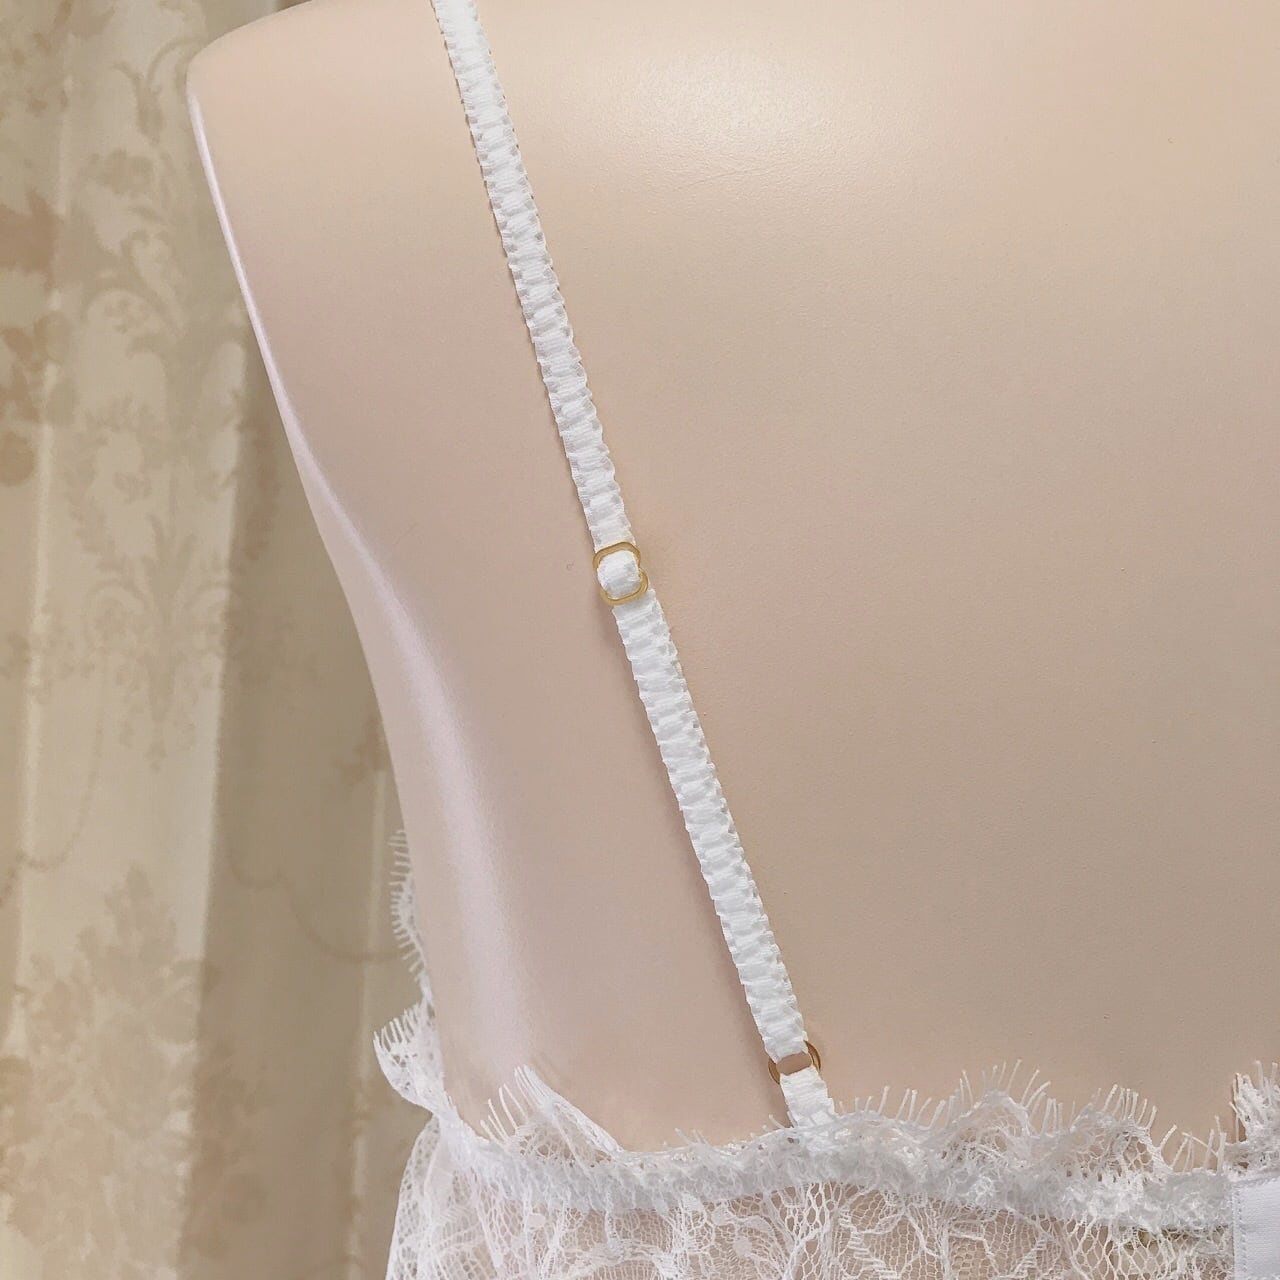 「innocent」white lingerie set